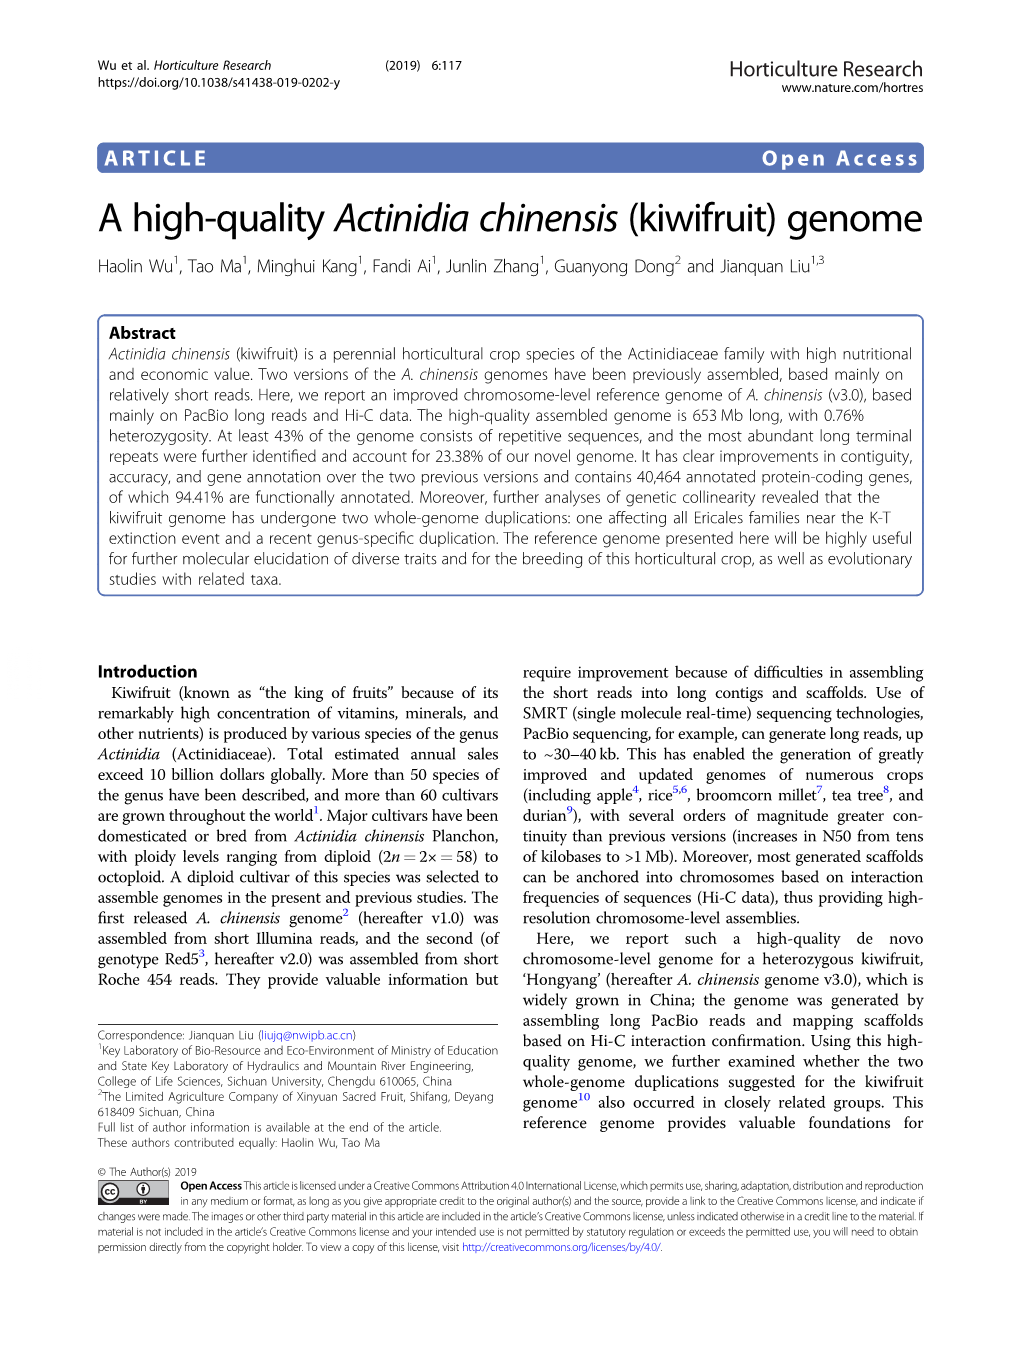 A High-Quality Actinidia Chinensis (Kiwifruit) Genome Haolin Wu1,Taoma1,Minghuikang1,Fandiai1, Junlin Zhang1, Guanyong Dong2 and Jianquan Liu1,3